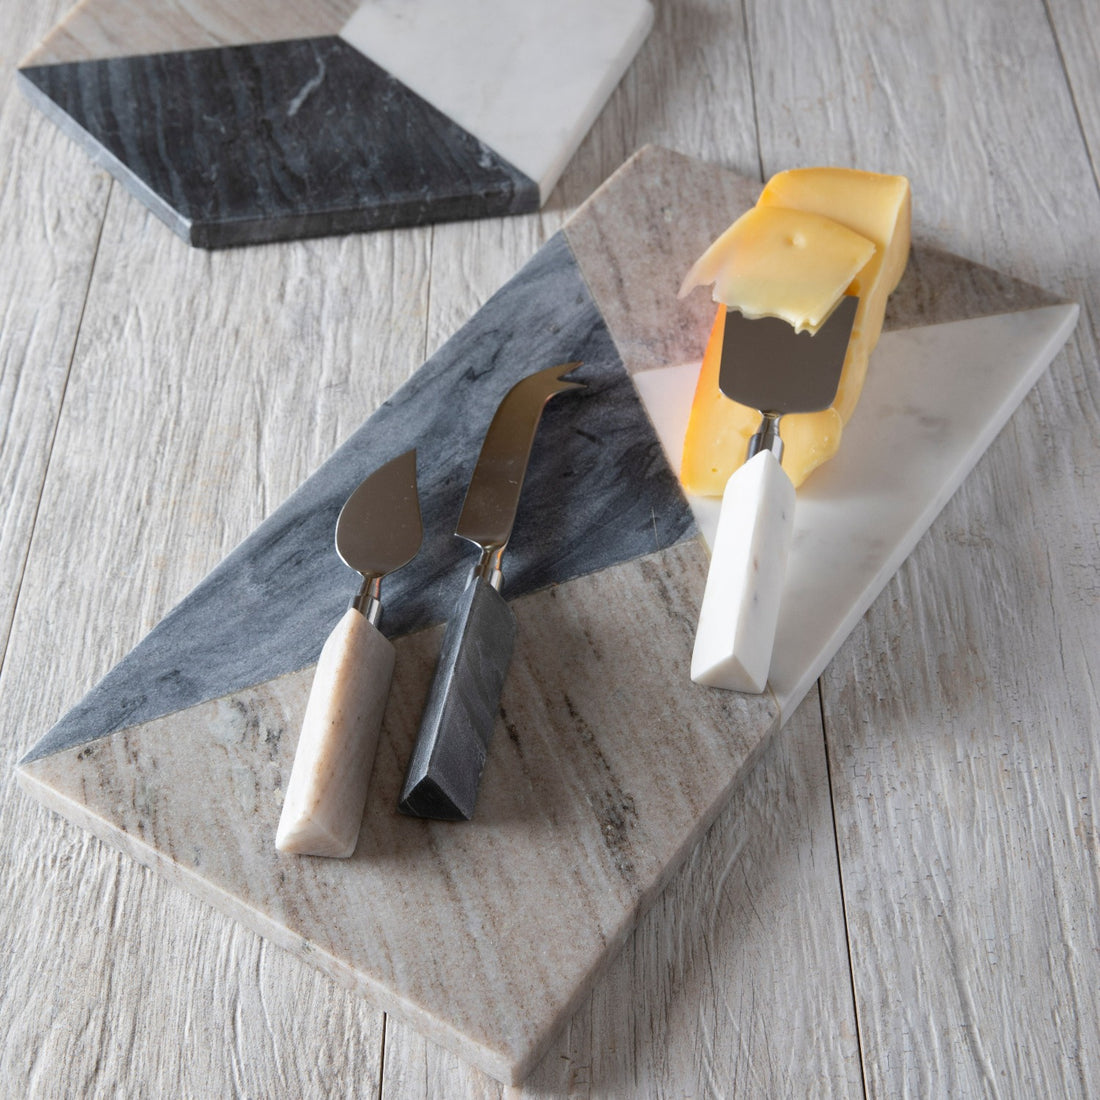 Geometric Marble Cheese Knife Set